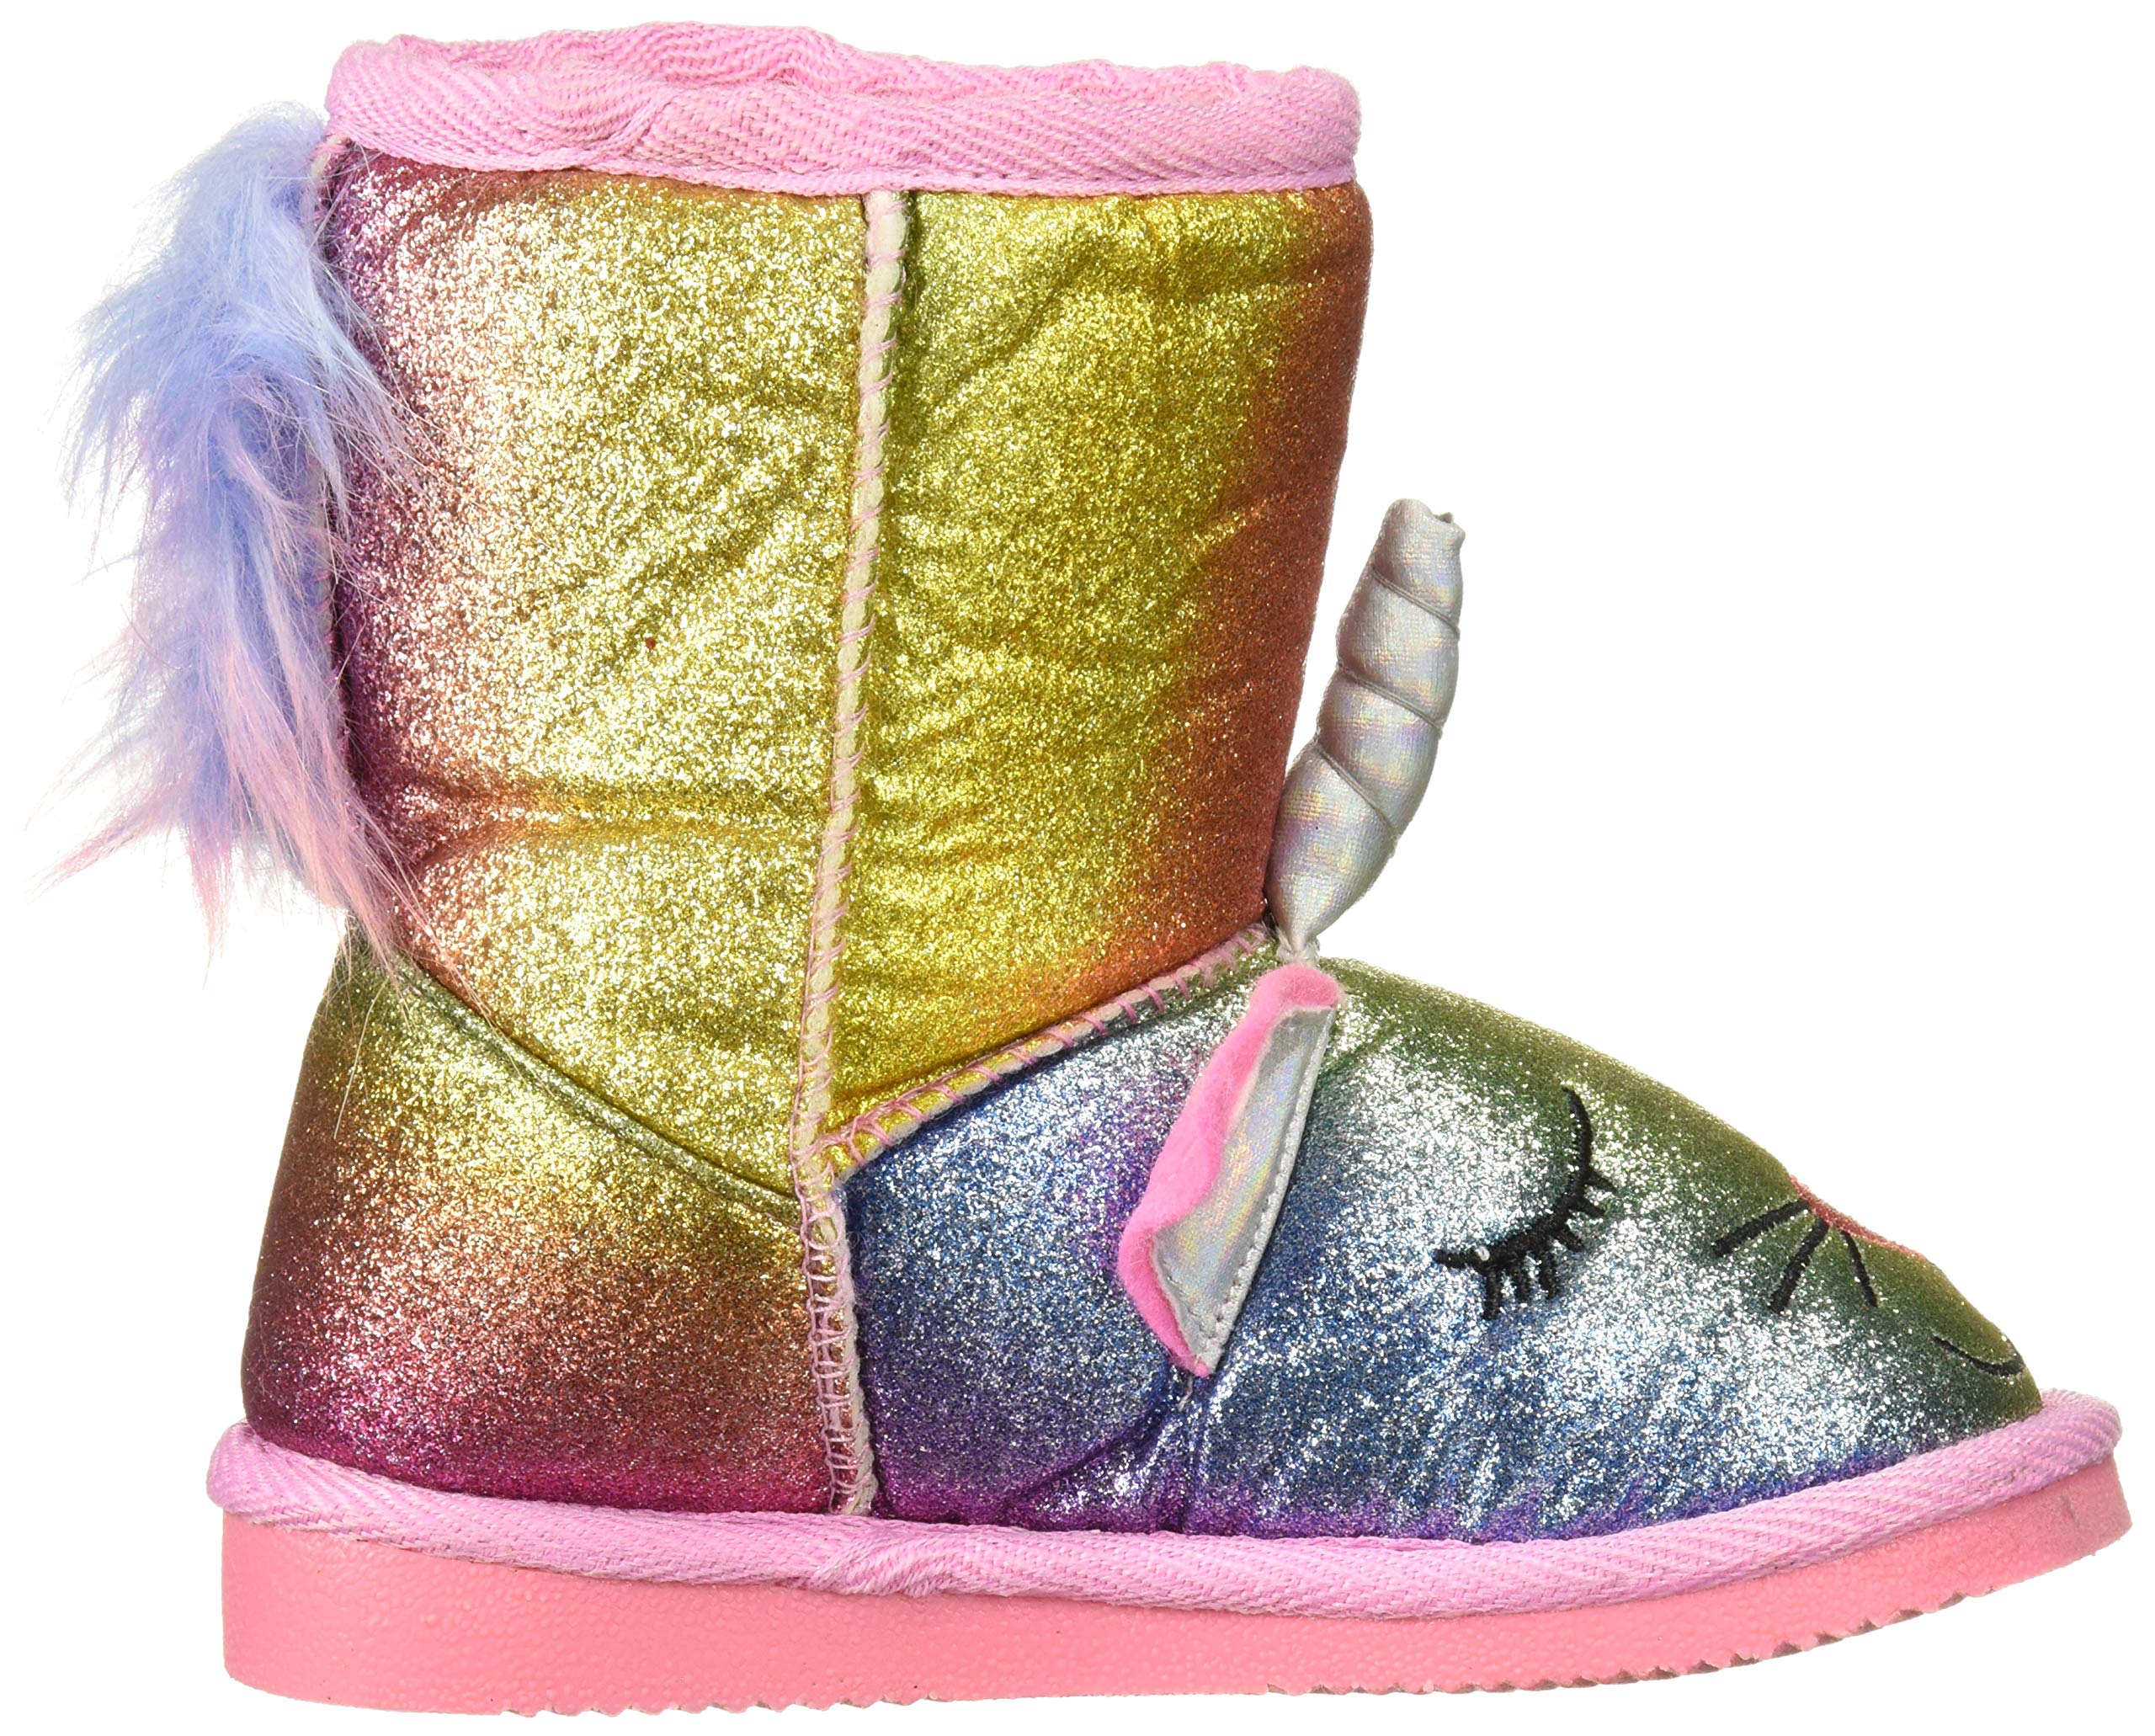 MUK LUKS Unisex-Child Kid's Averly Unikitten Boots Fashion